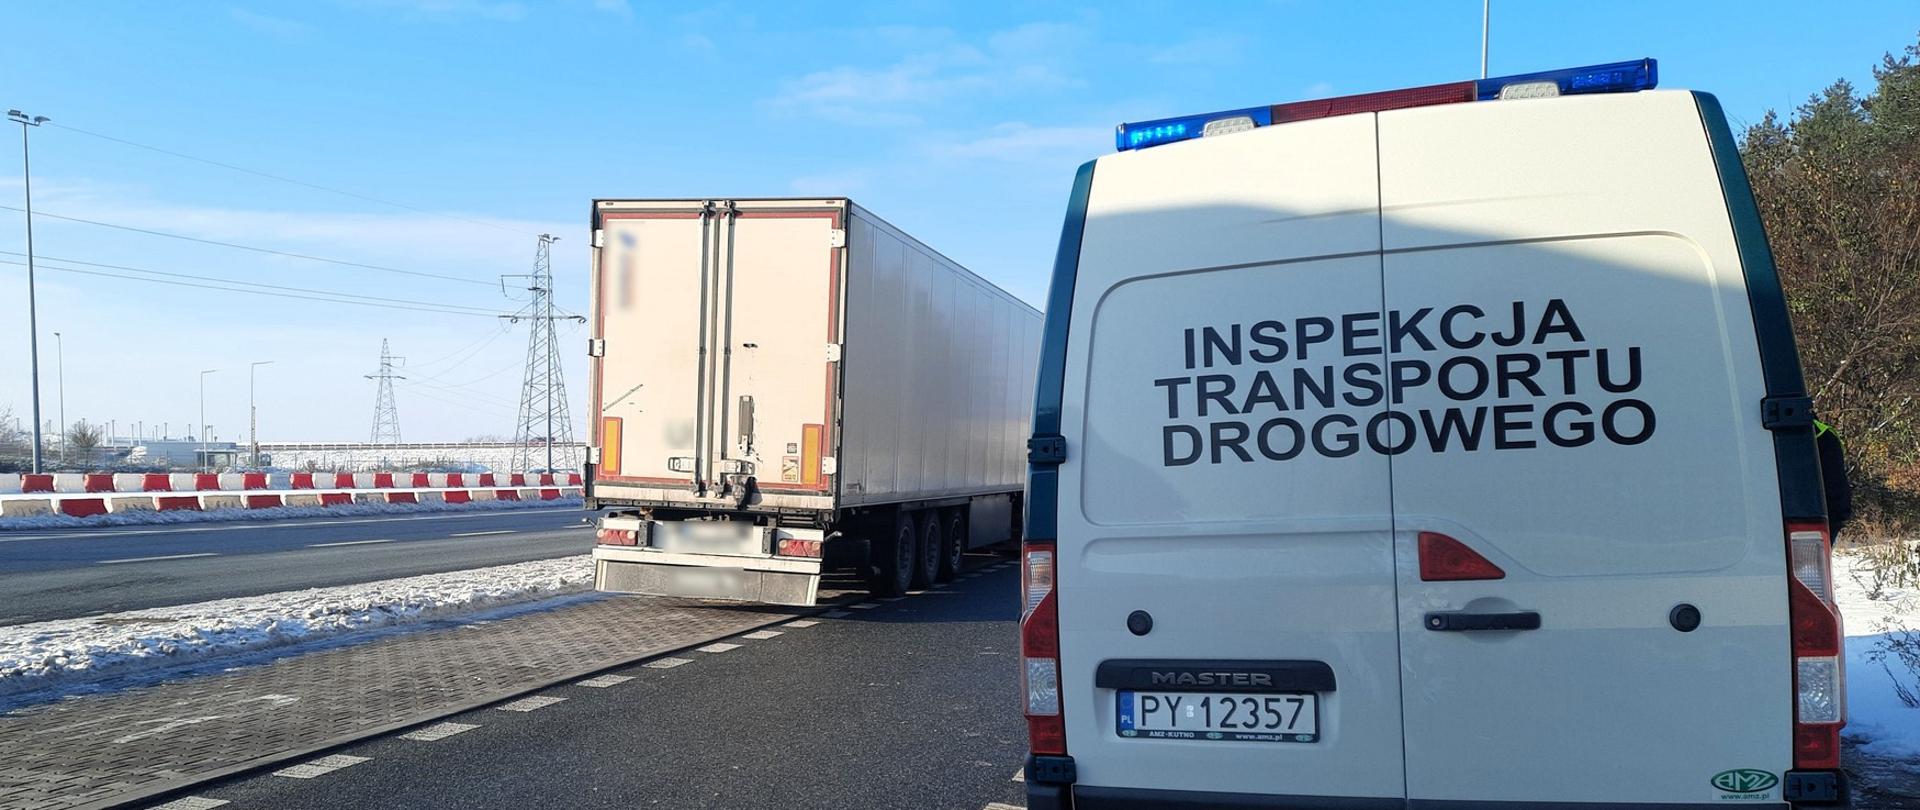 Miejsce kontroli ciężarówki zatrzymanej przez patrol wielkopolskiej Inspekcji Transportu Drogowego. Ciągnik siodłowy z podpiętą naczepą stoi obok oznakowanego furgonu ITD.